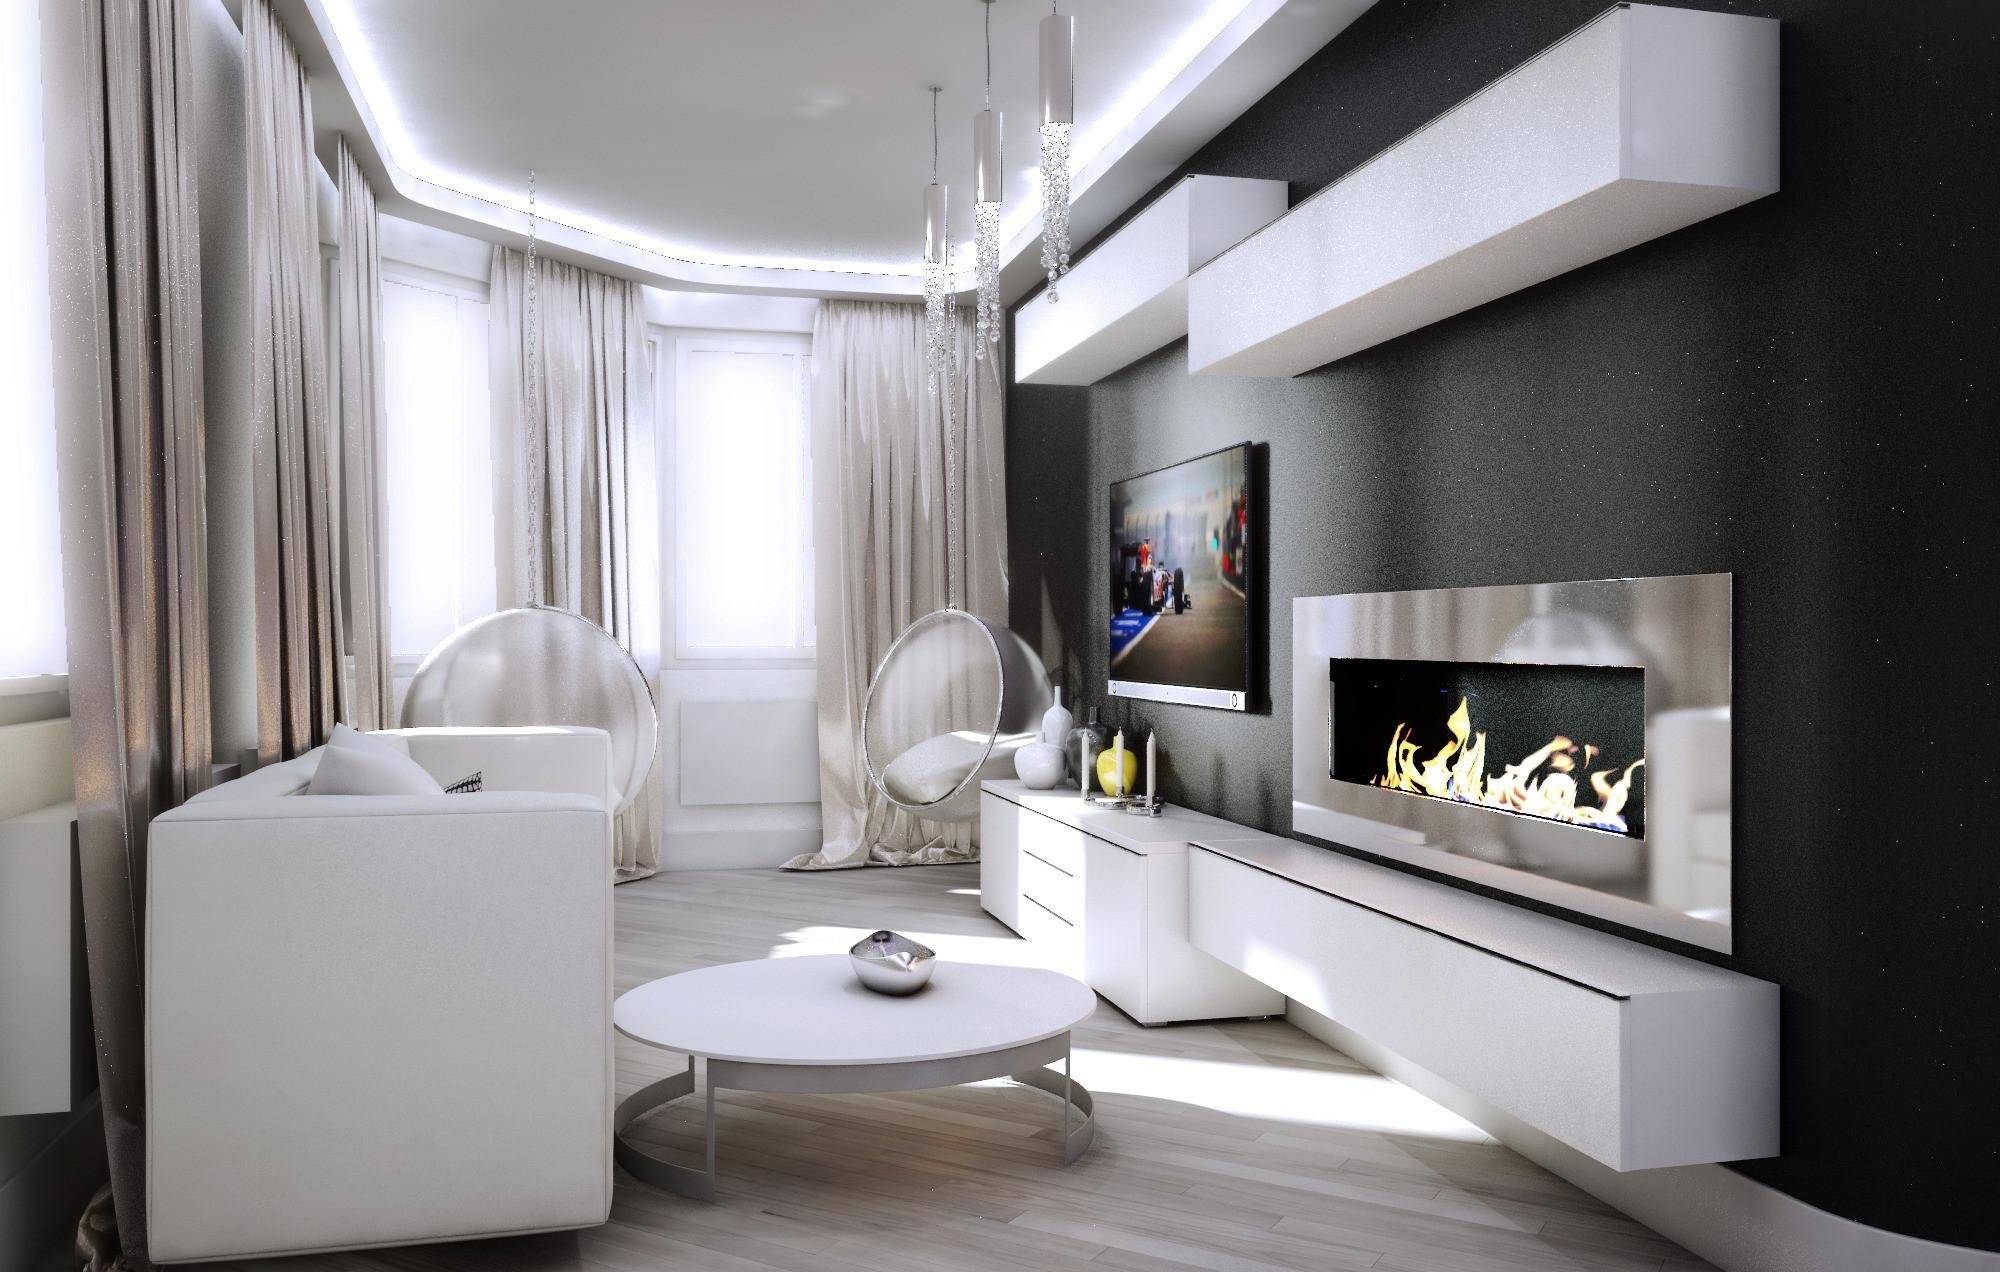 Черно-белая гостиная: идеи дизайна интерьера с классическим контрастом (+ 64 фото, видео)